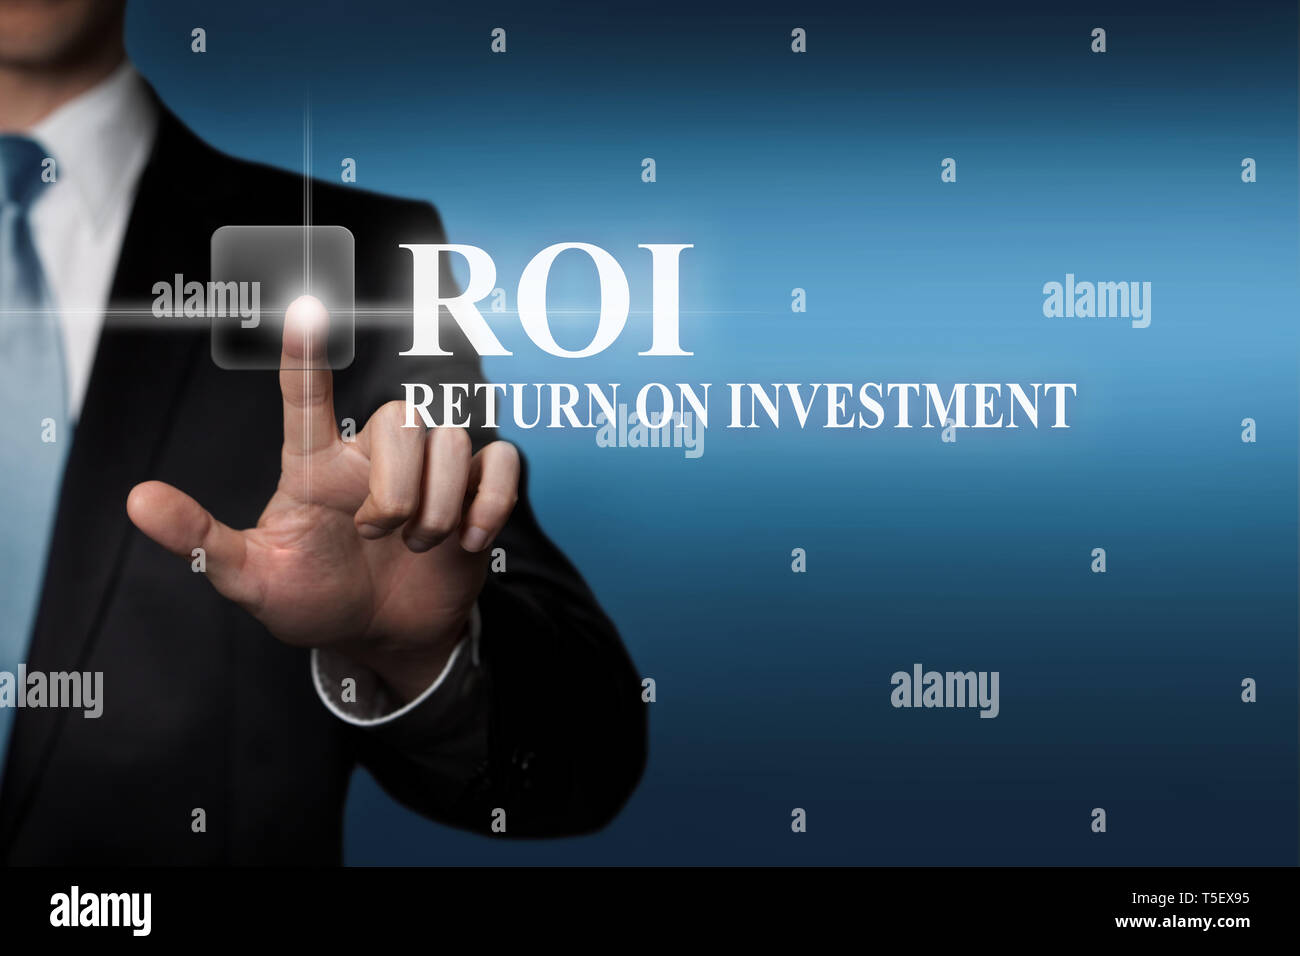 Concepto de negocio - empresario en traje presiona el botón táctil virtual - ROI Retorno de la inversión Foto de stock